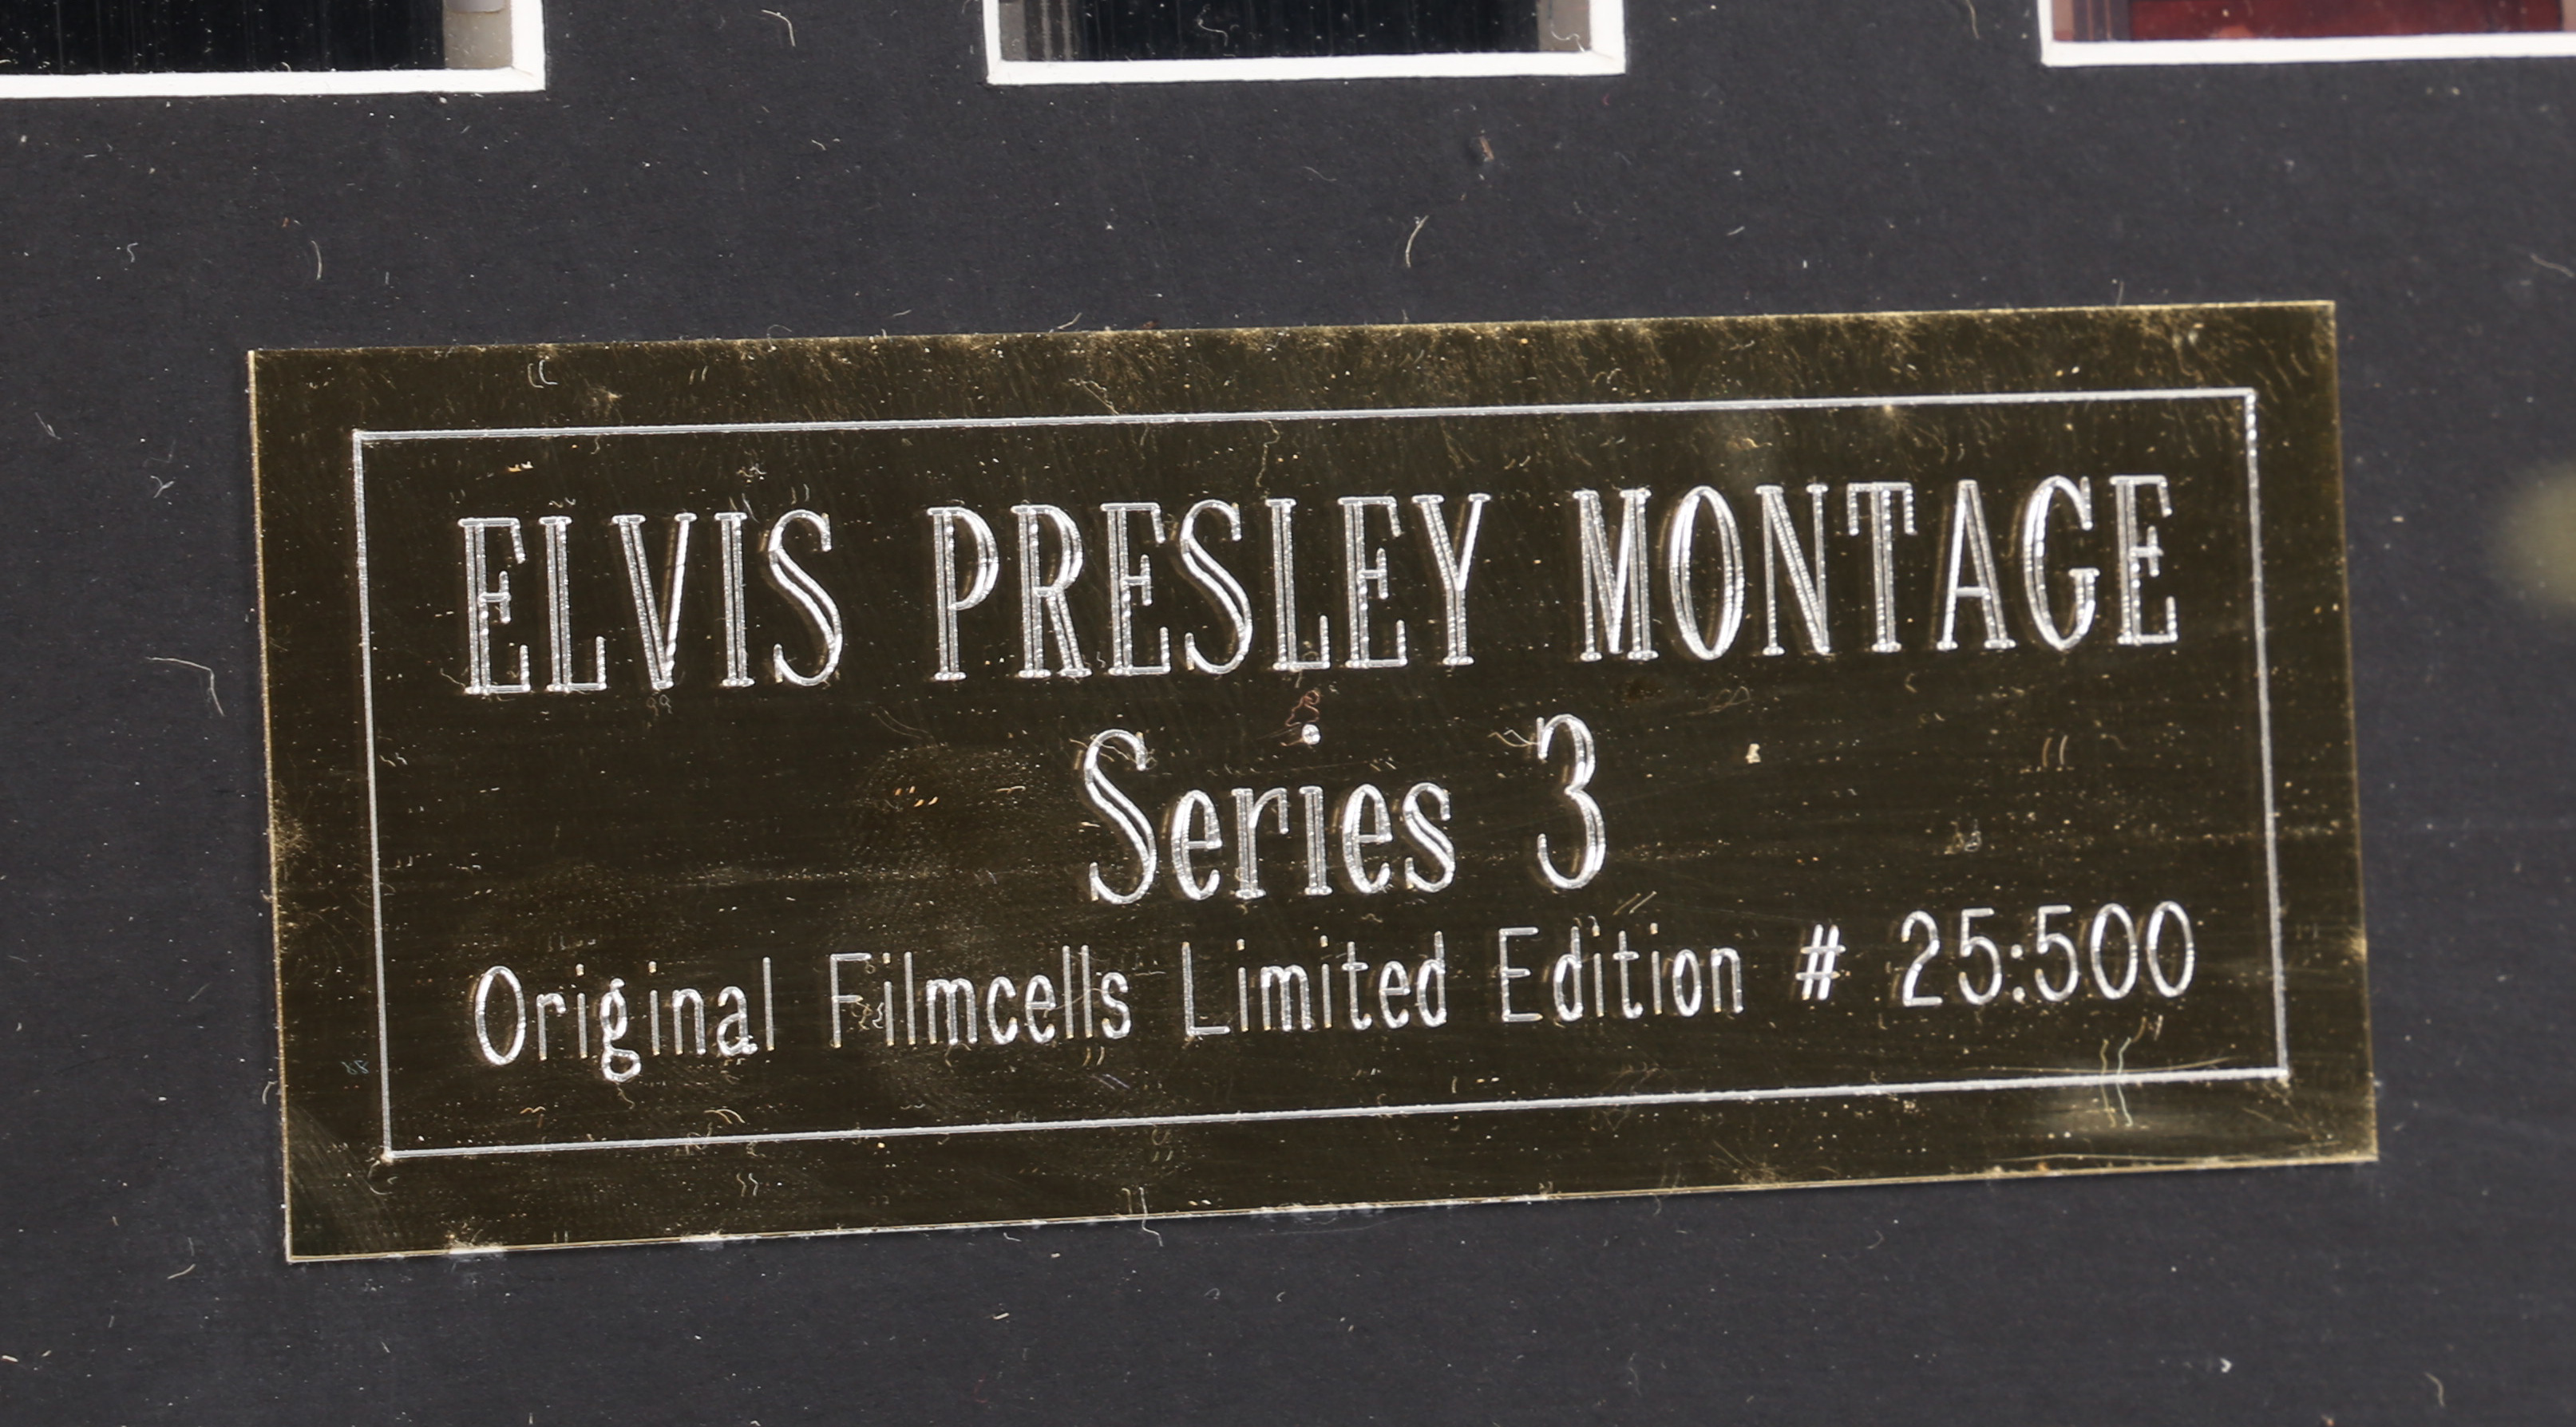 Elvis Presley Montages Series 3 & 4 - Image 7 of 8